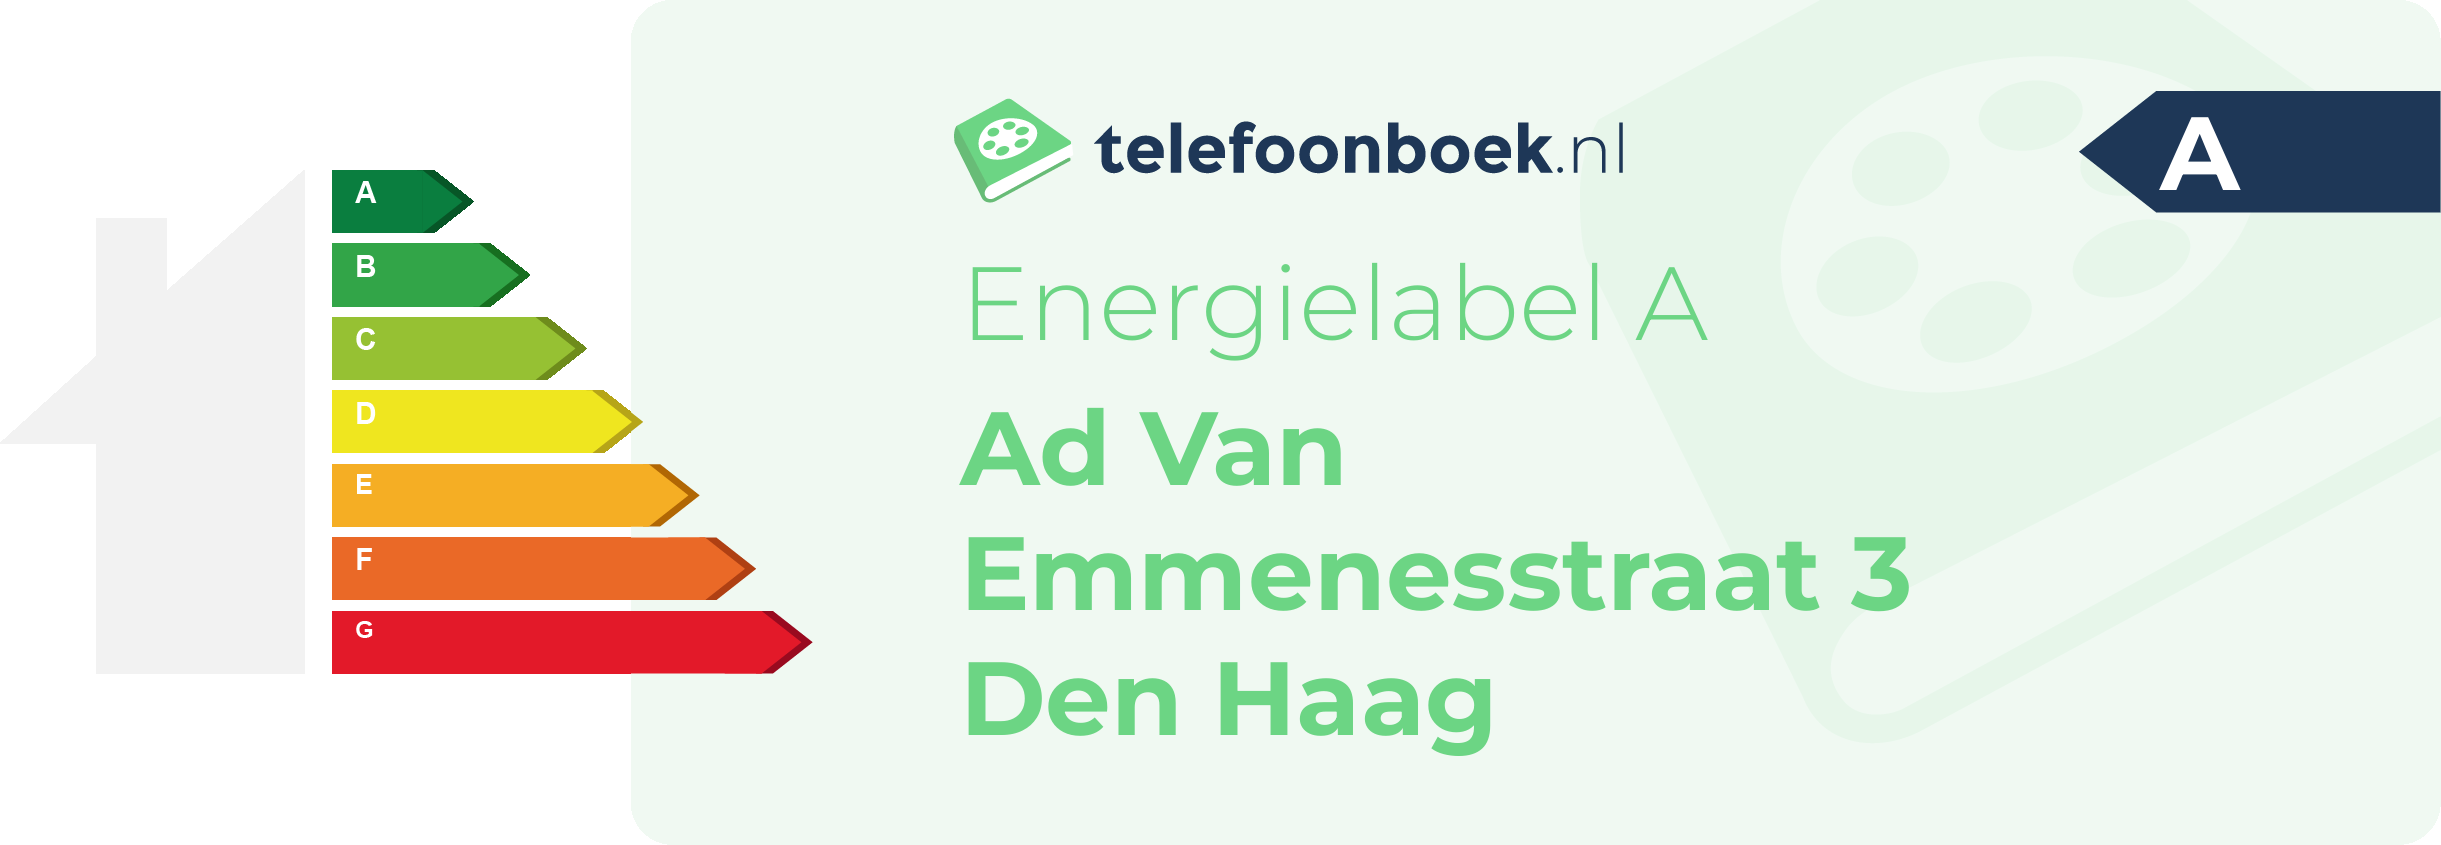 Energielabel Ad Van Emmenesstraat 3 Den Haag